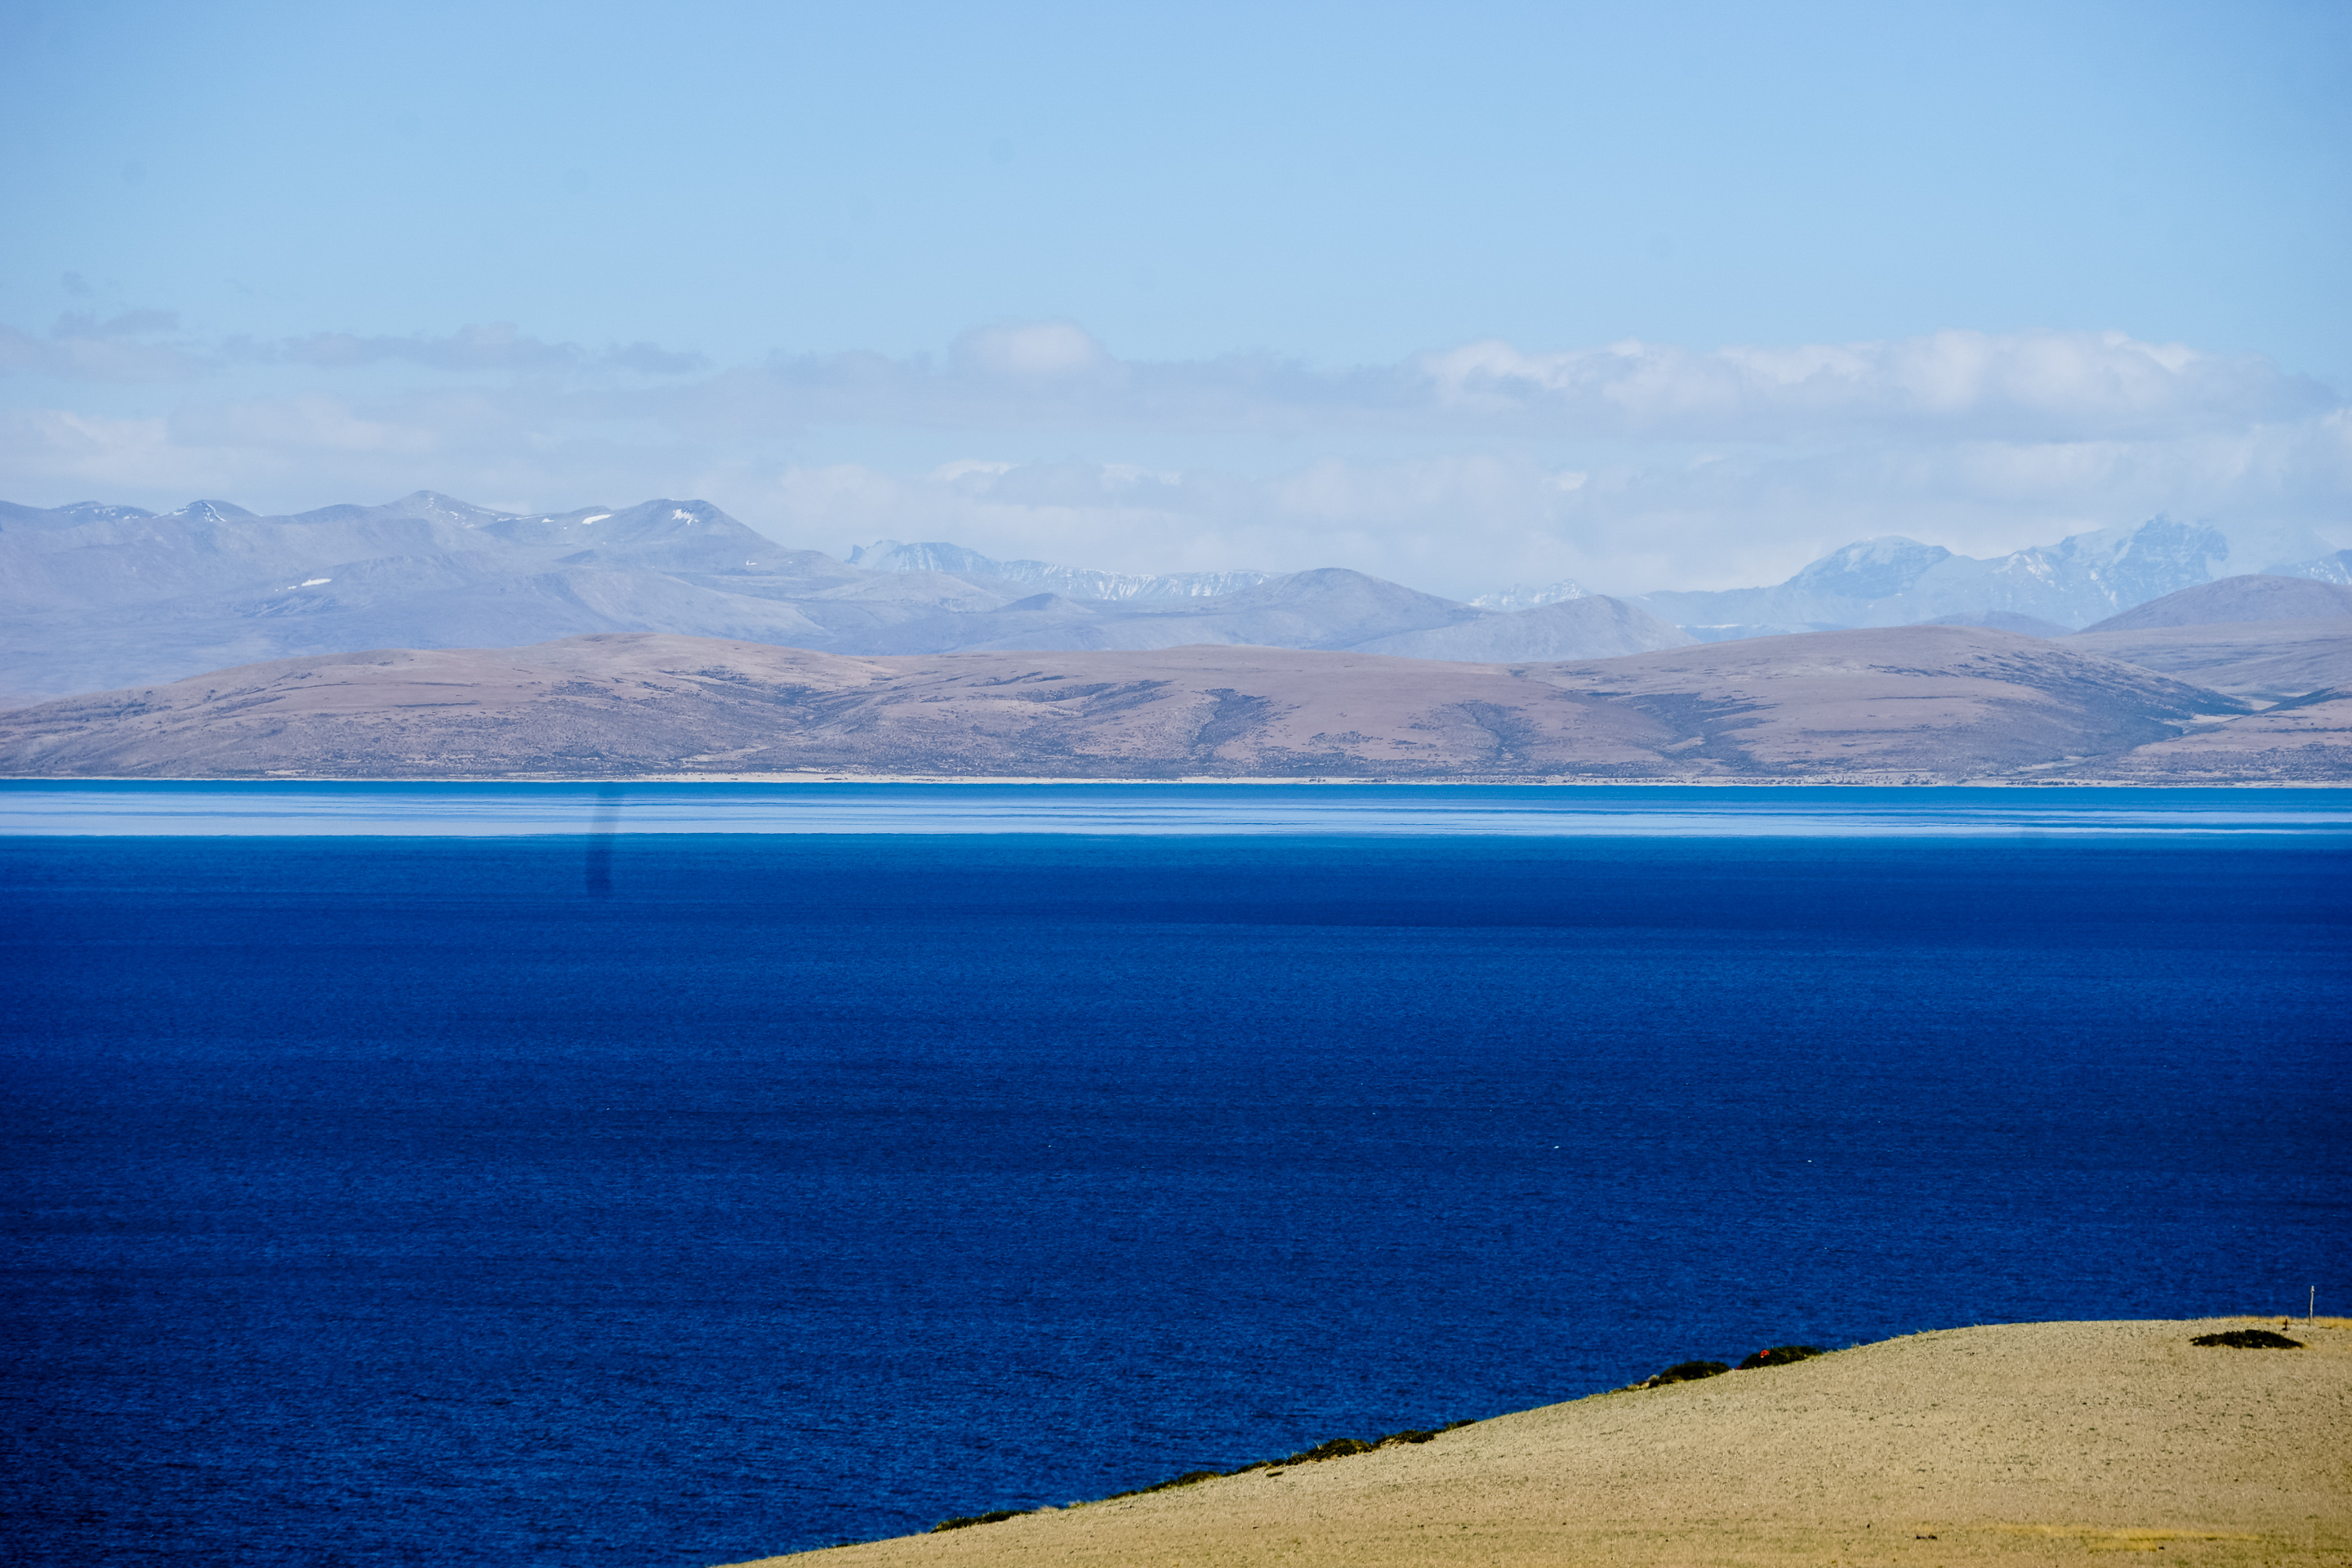 补给减少,水位下降 西藏圣湖玛旁雍措会变成咸水湖么?